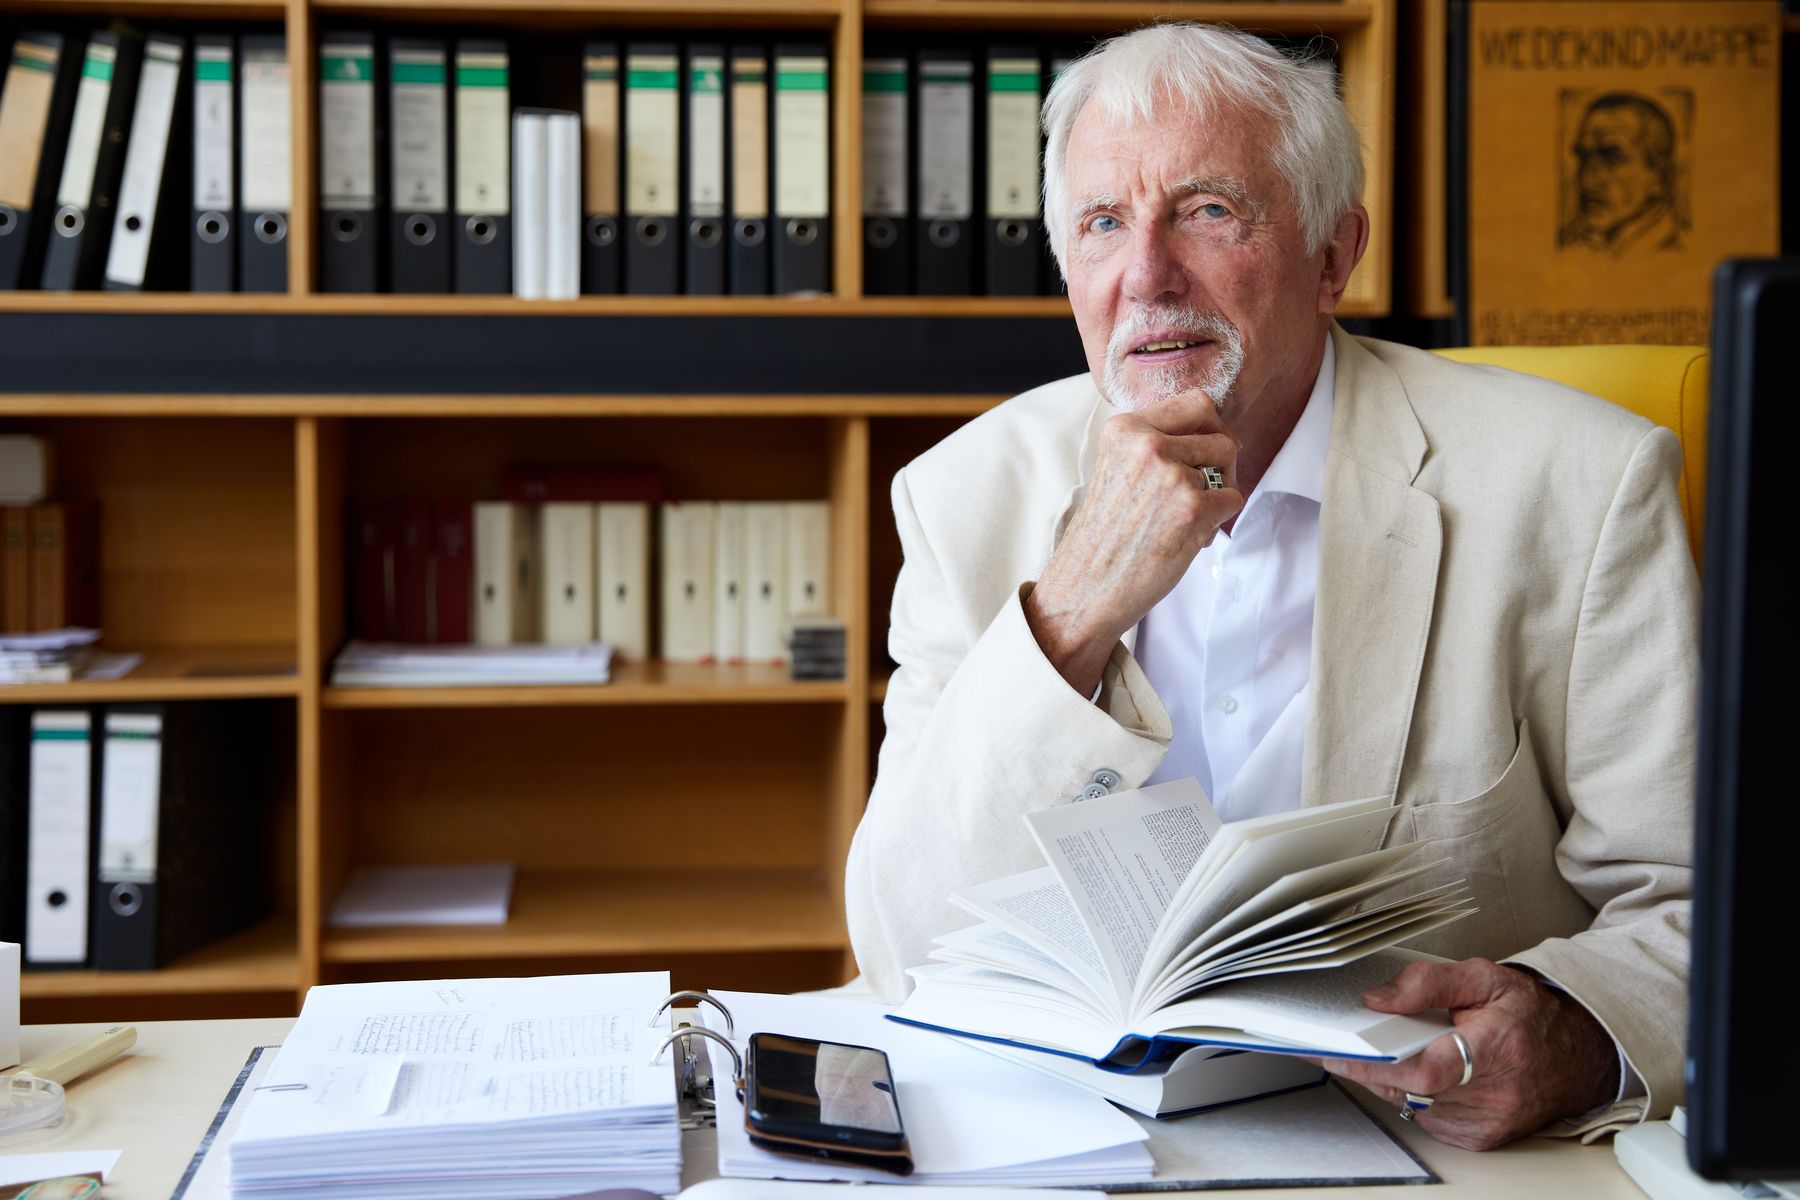 Portraitfoto von Prof. Vincont in seinem Büro, im Hintergrund Bücher und Leitzordner